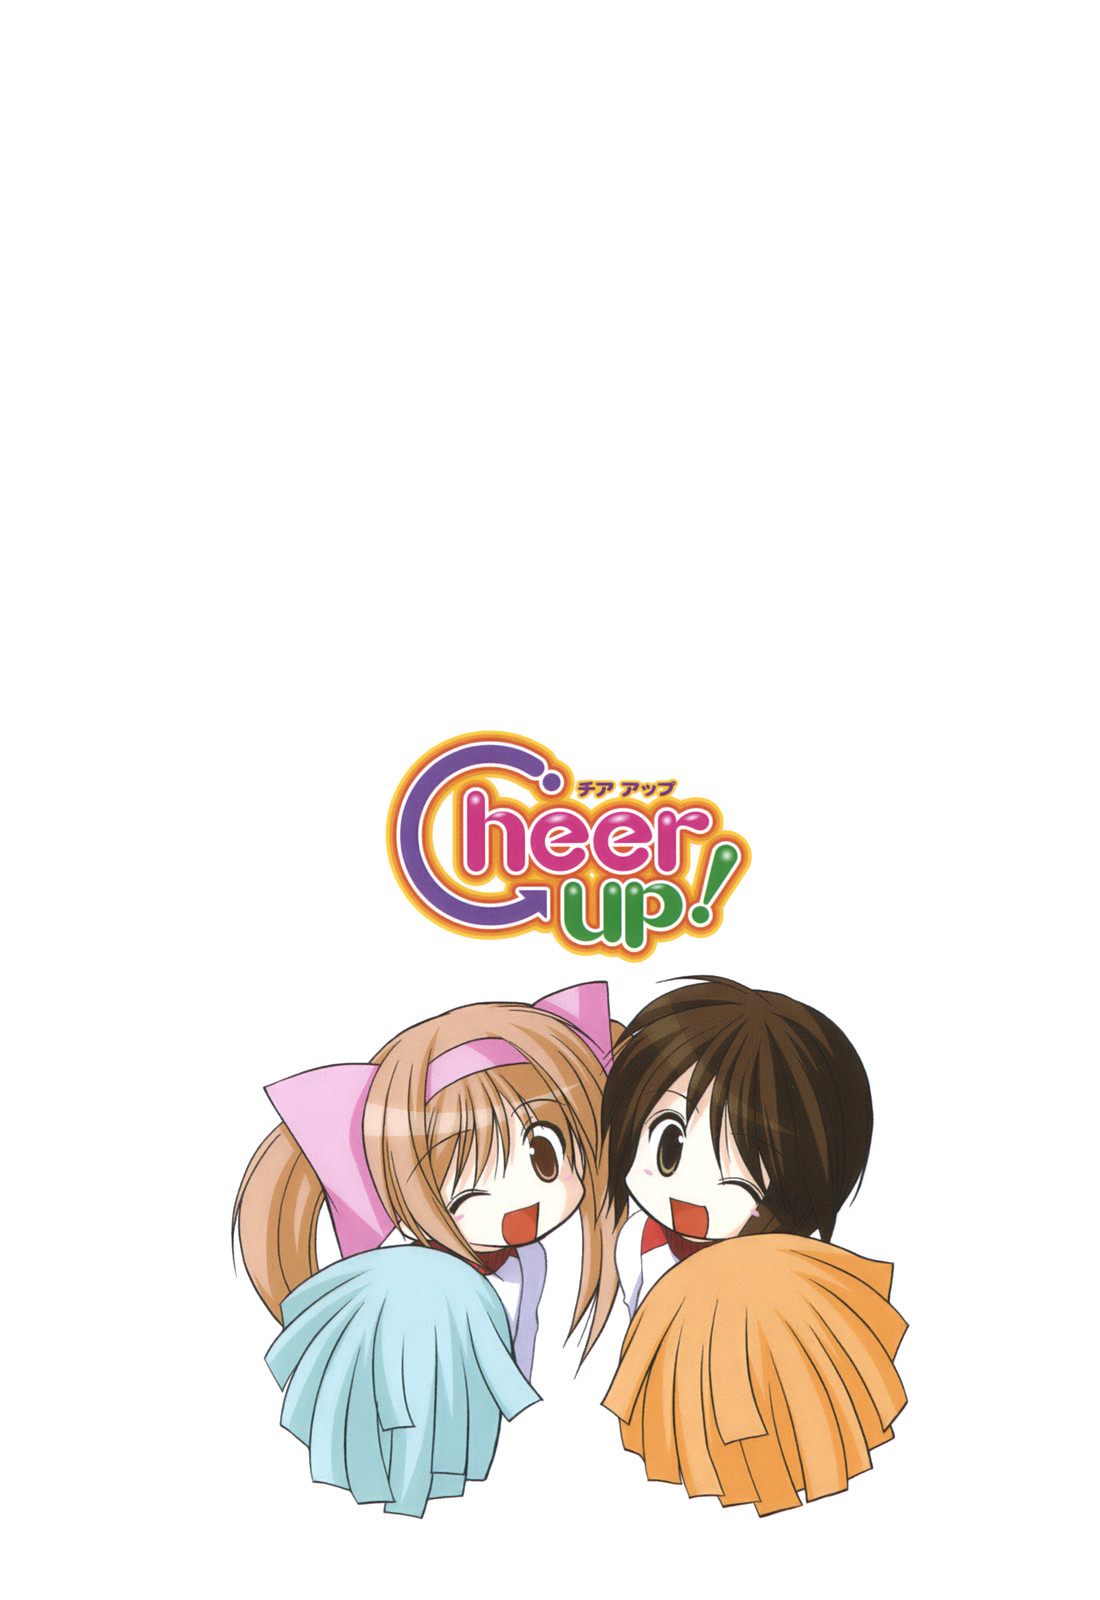 [あずまゆき] Cheer up!